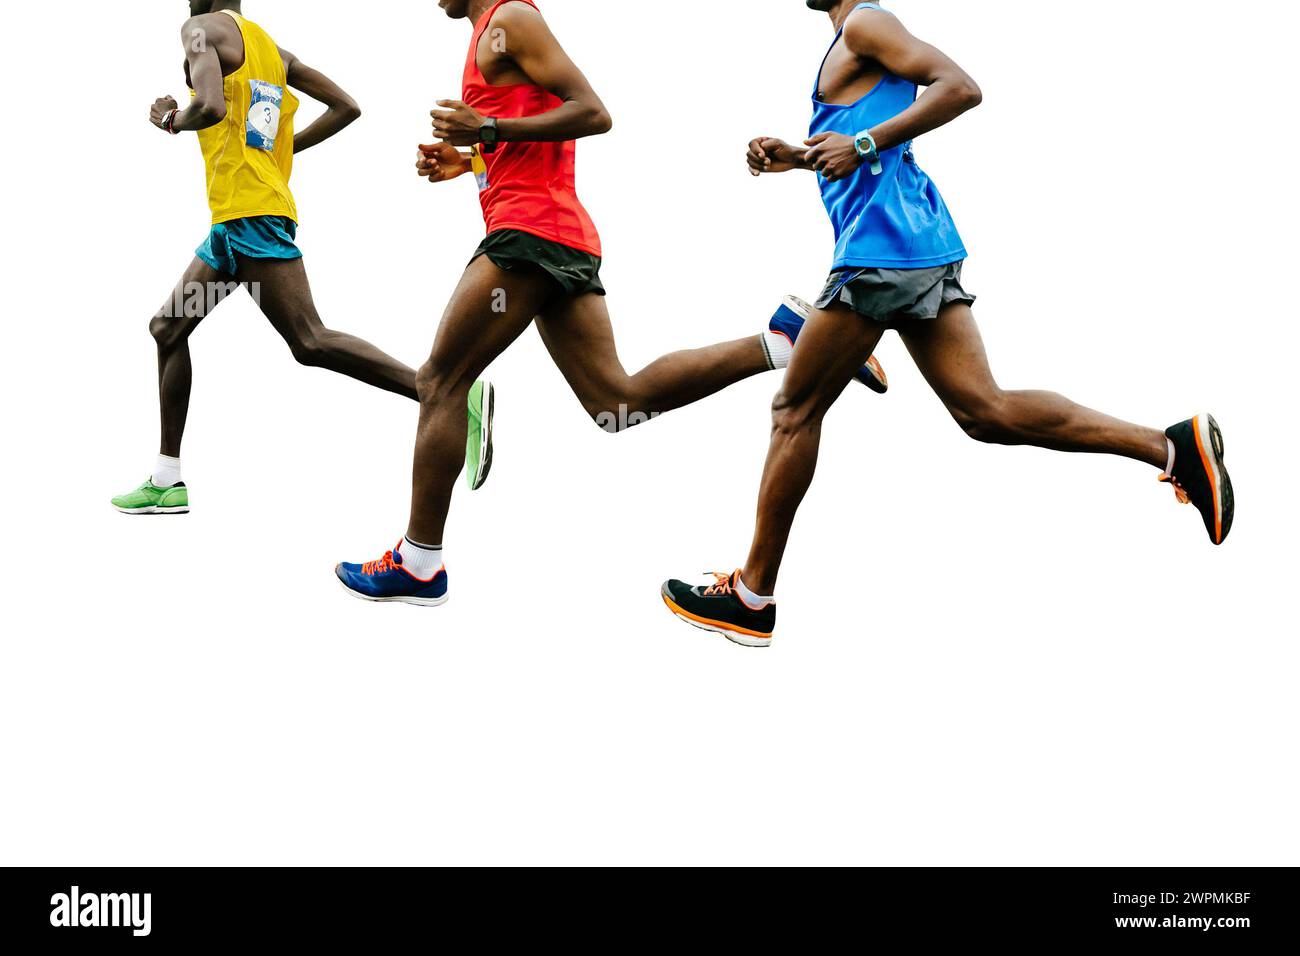 los corredores africanos del grupo principal vestidos con ropa deportiva brillante carrera, aislados sobre fondo blanco Foto de stock